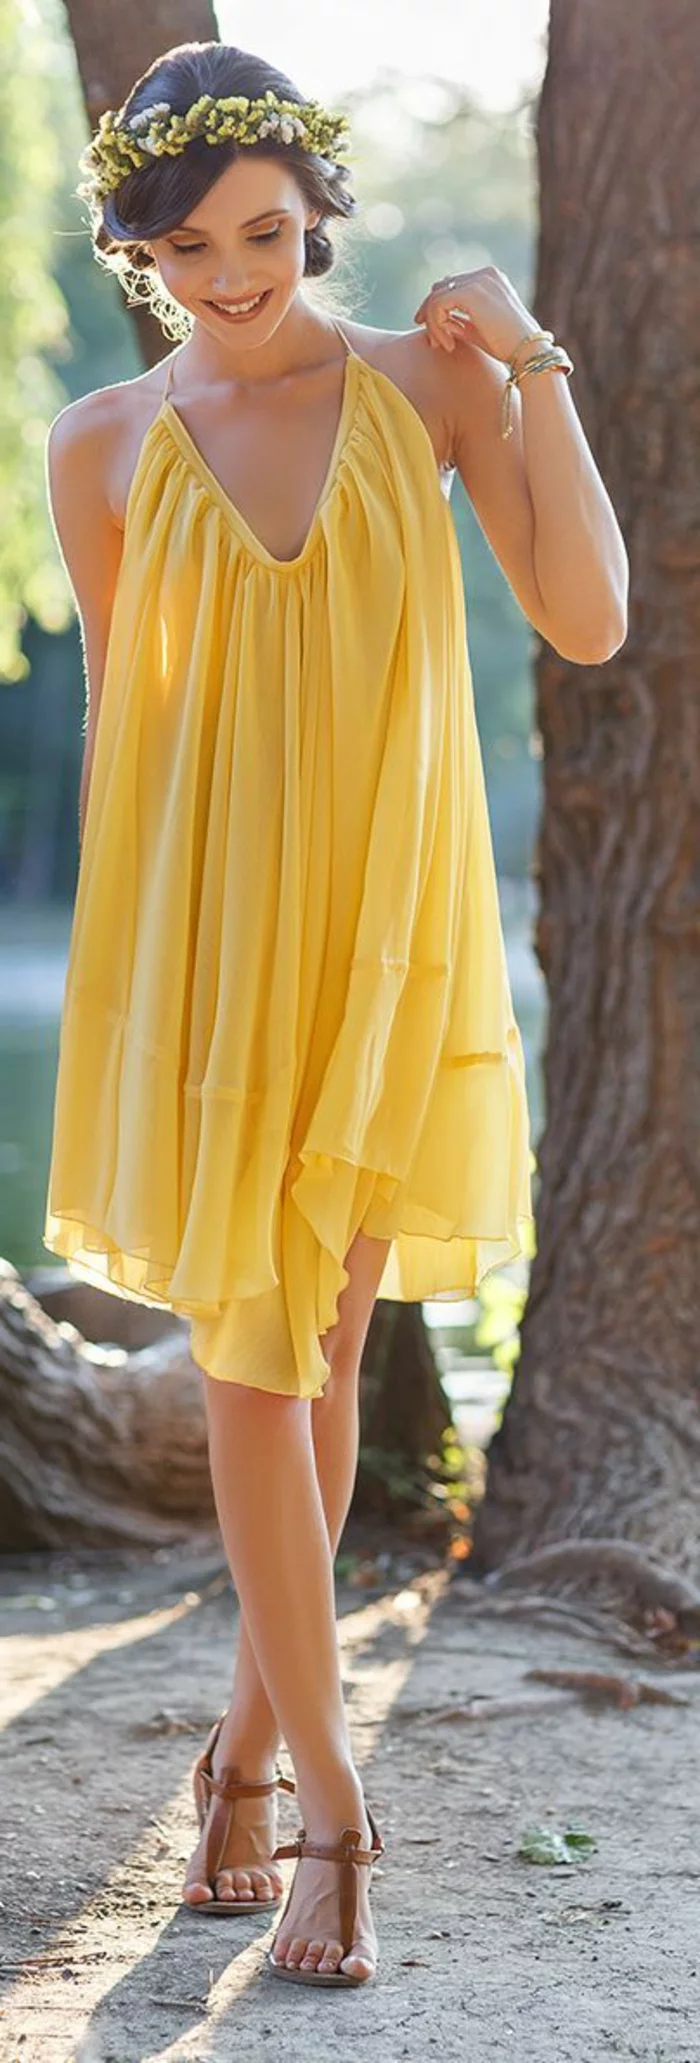 kleid gelb luftig weiblich frauenmode